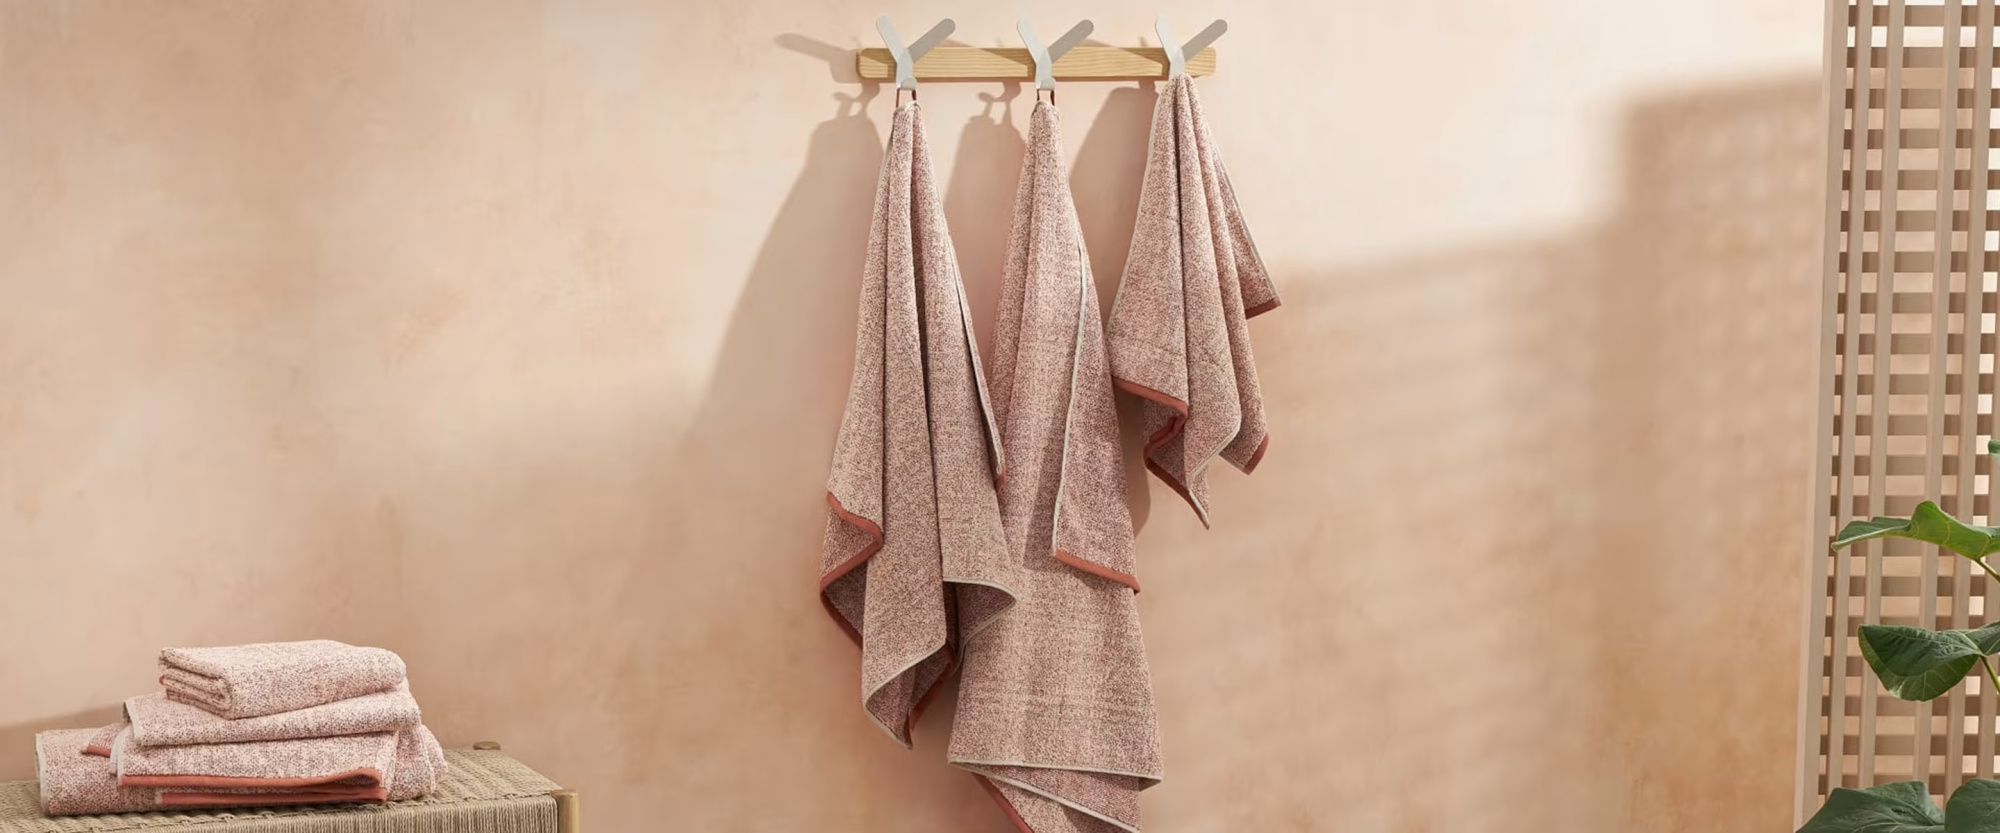 Руководство по покупке: Как выбрать полотенца